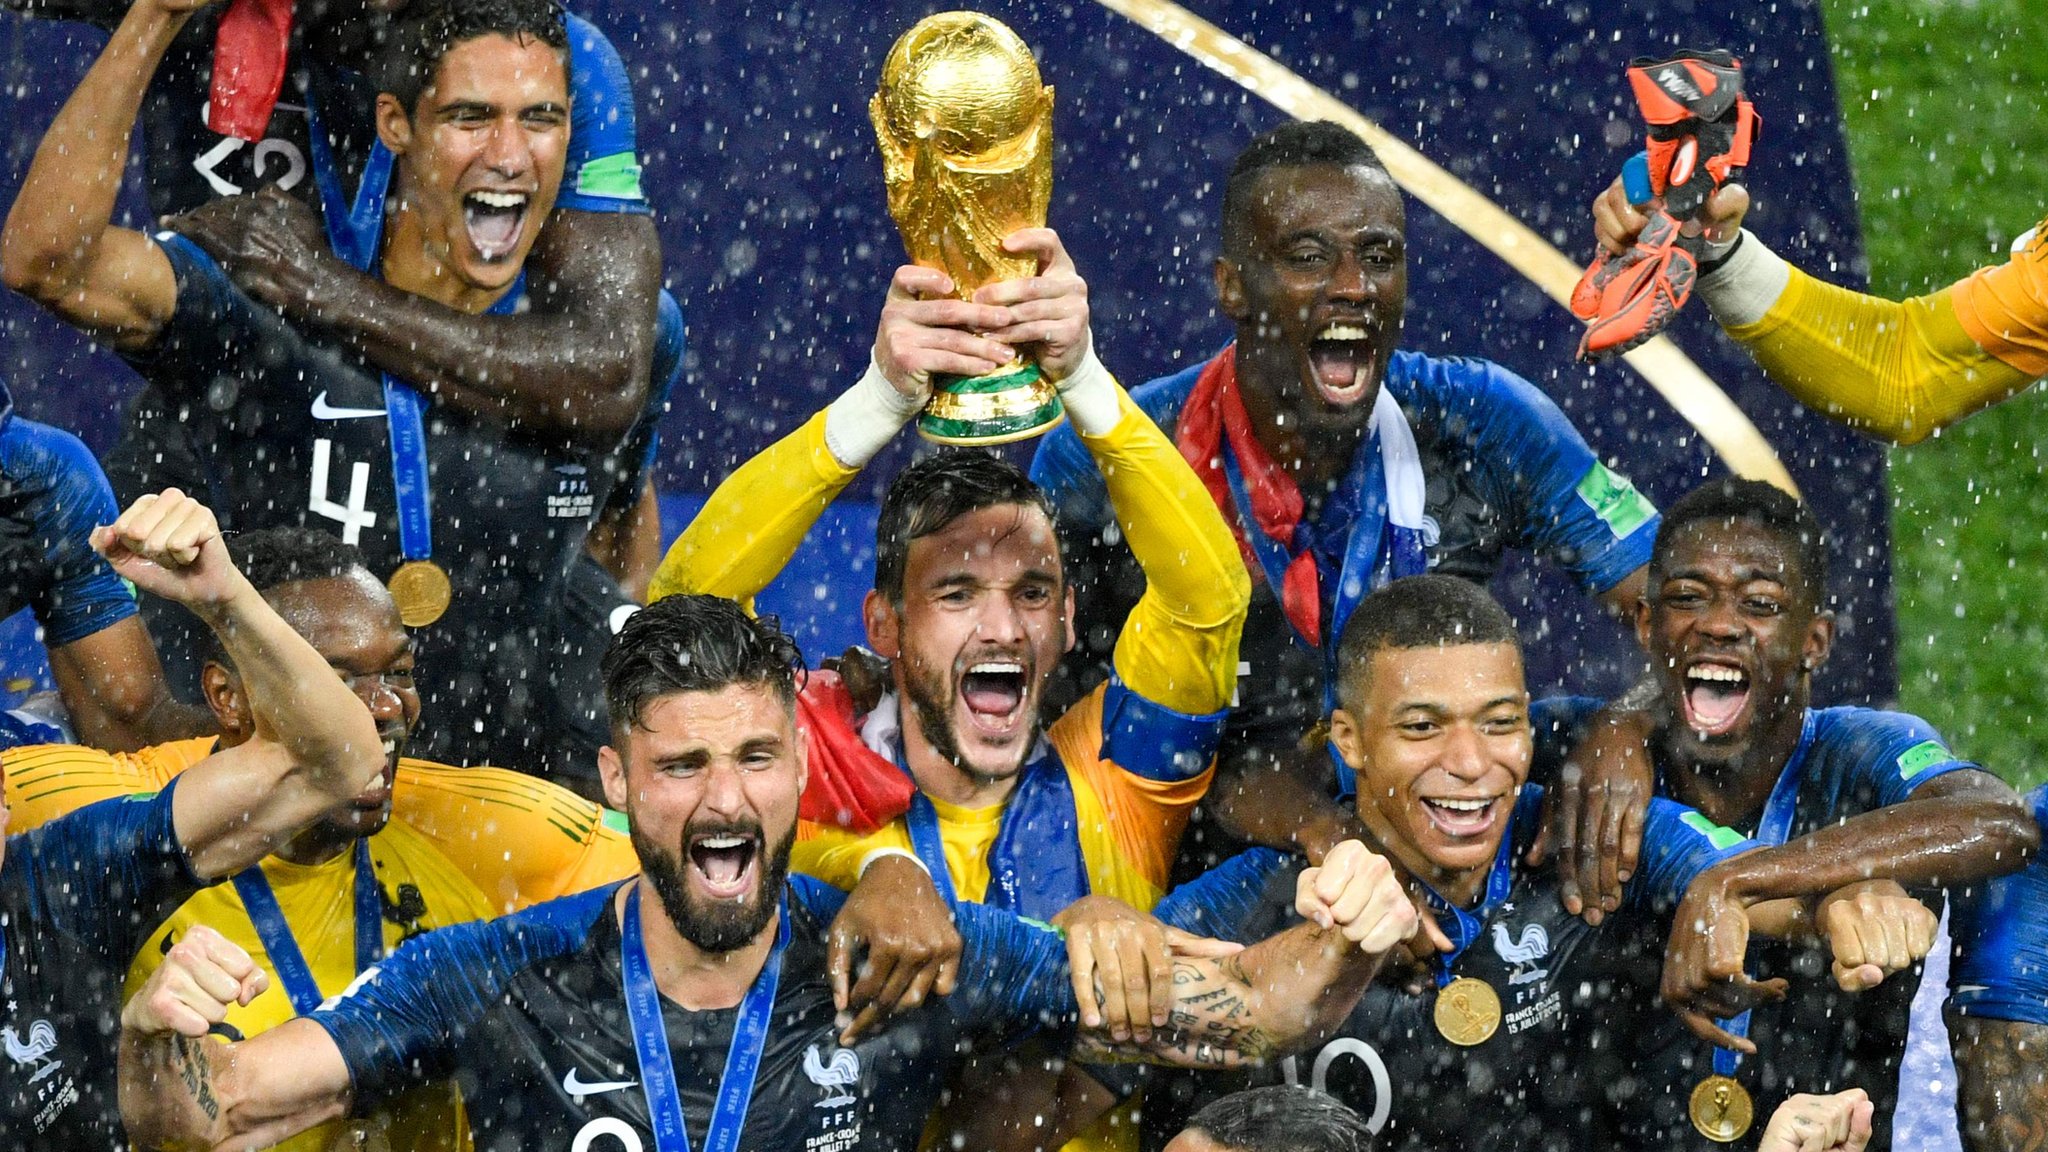 De lo mejor a peor del Mundial de 2018: el final de la BBC en el cierre de Copa del Mundo - BBC News Mundo